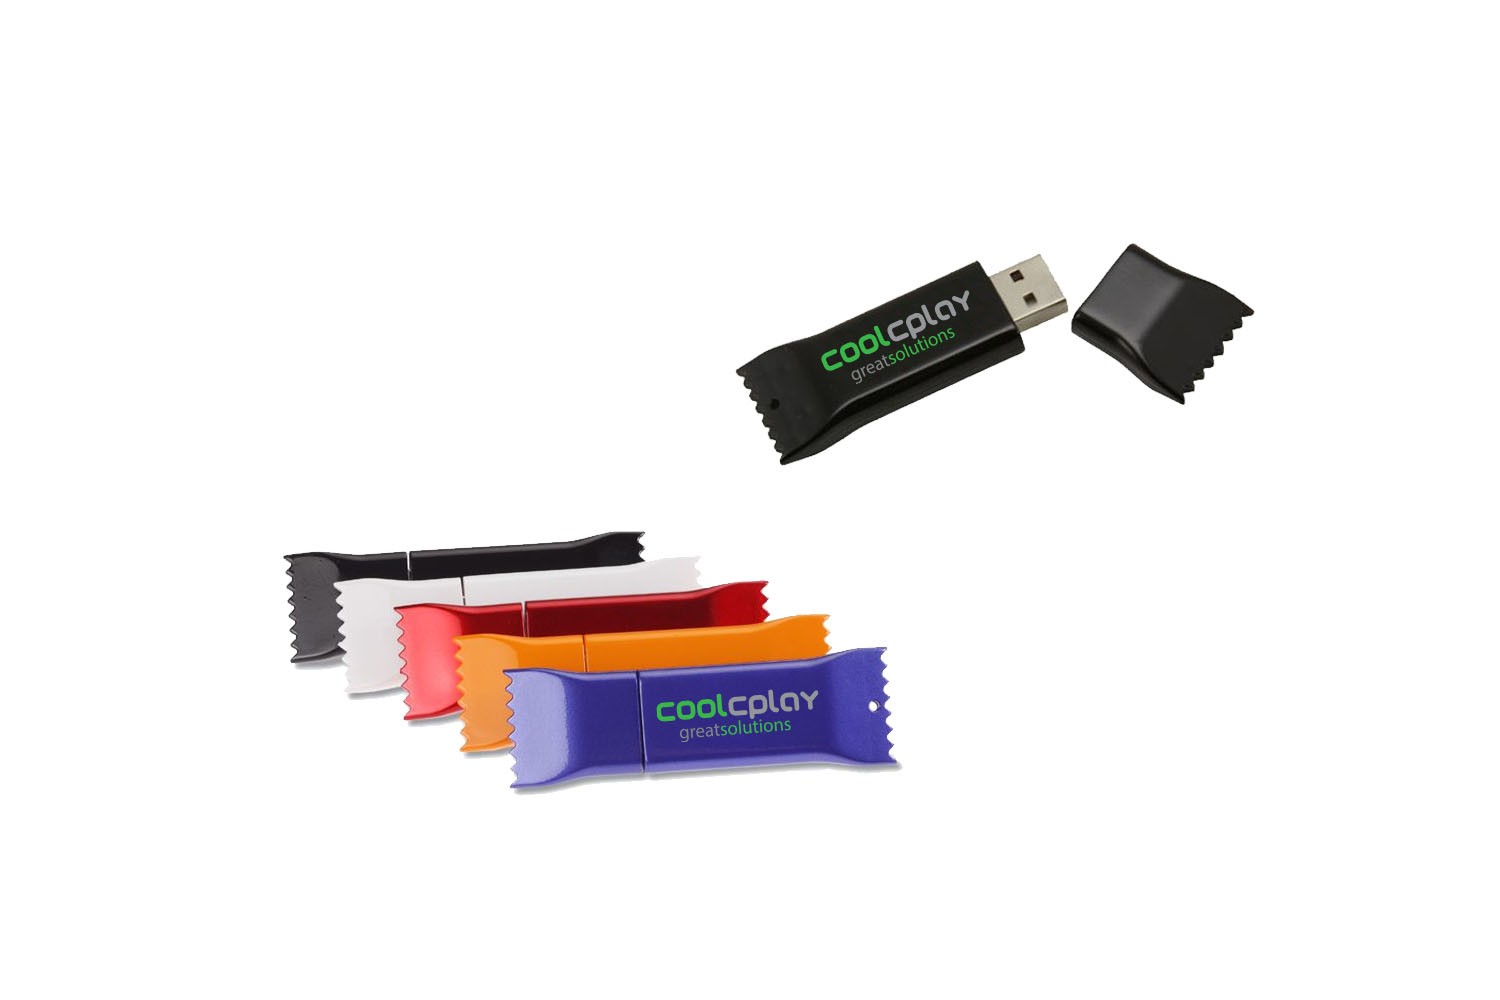 256 MB Plastic Candy Shaped USB Flashdrive